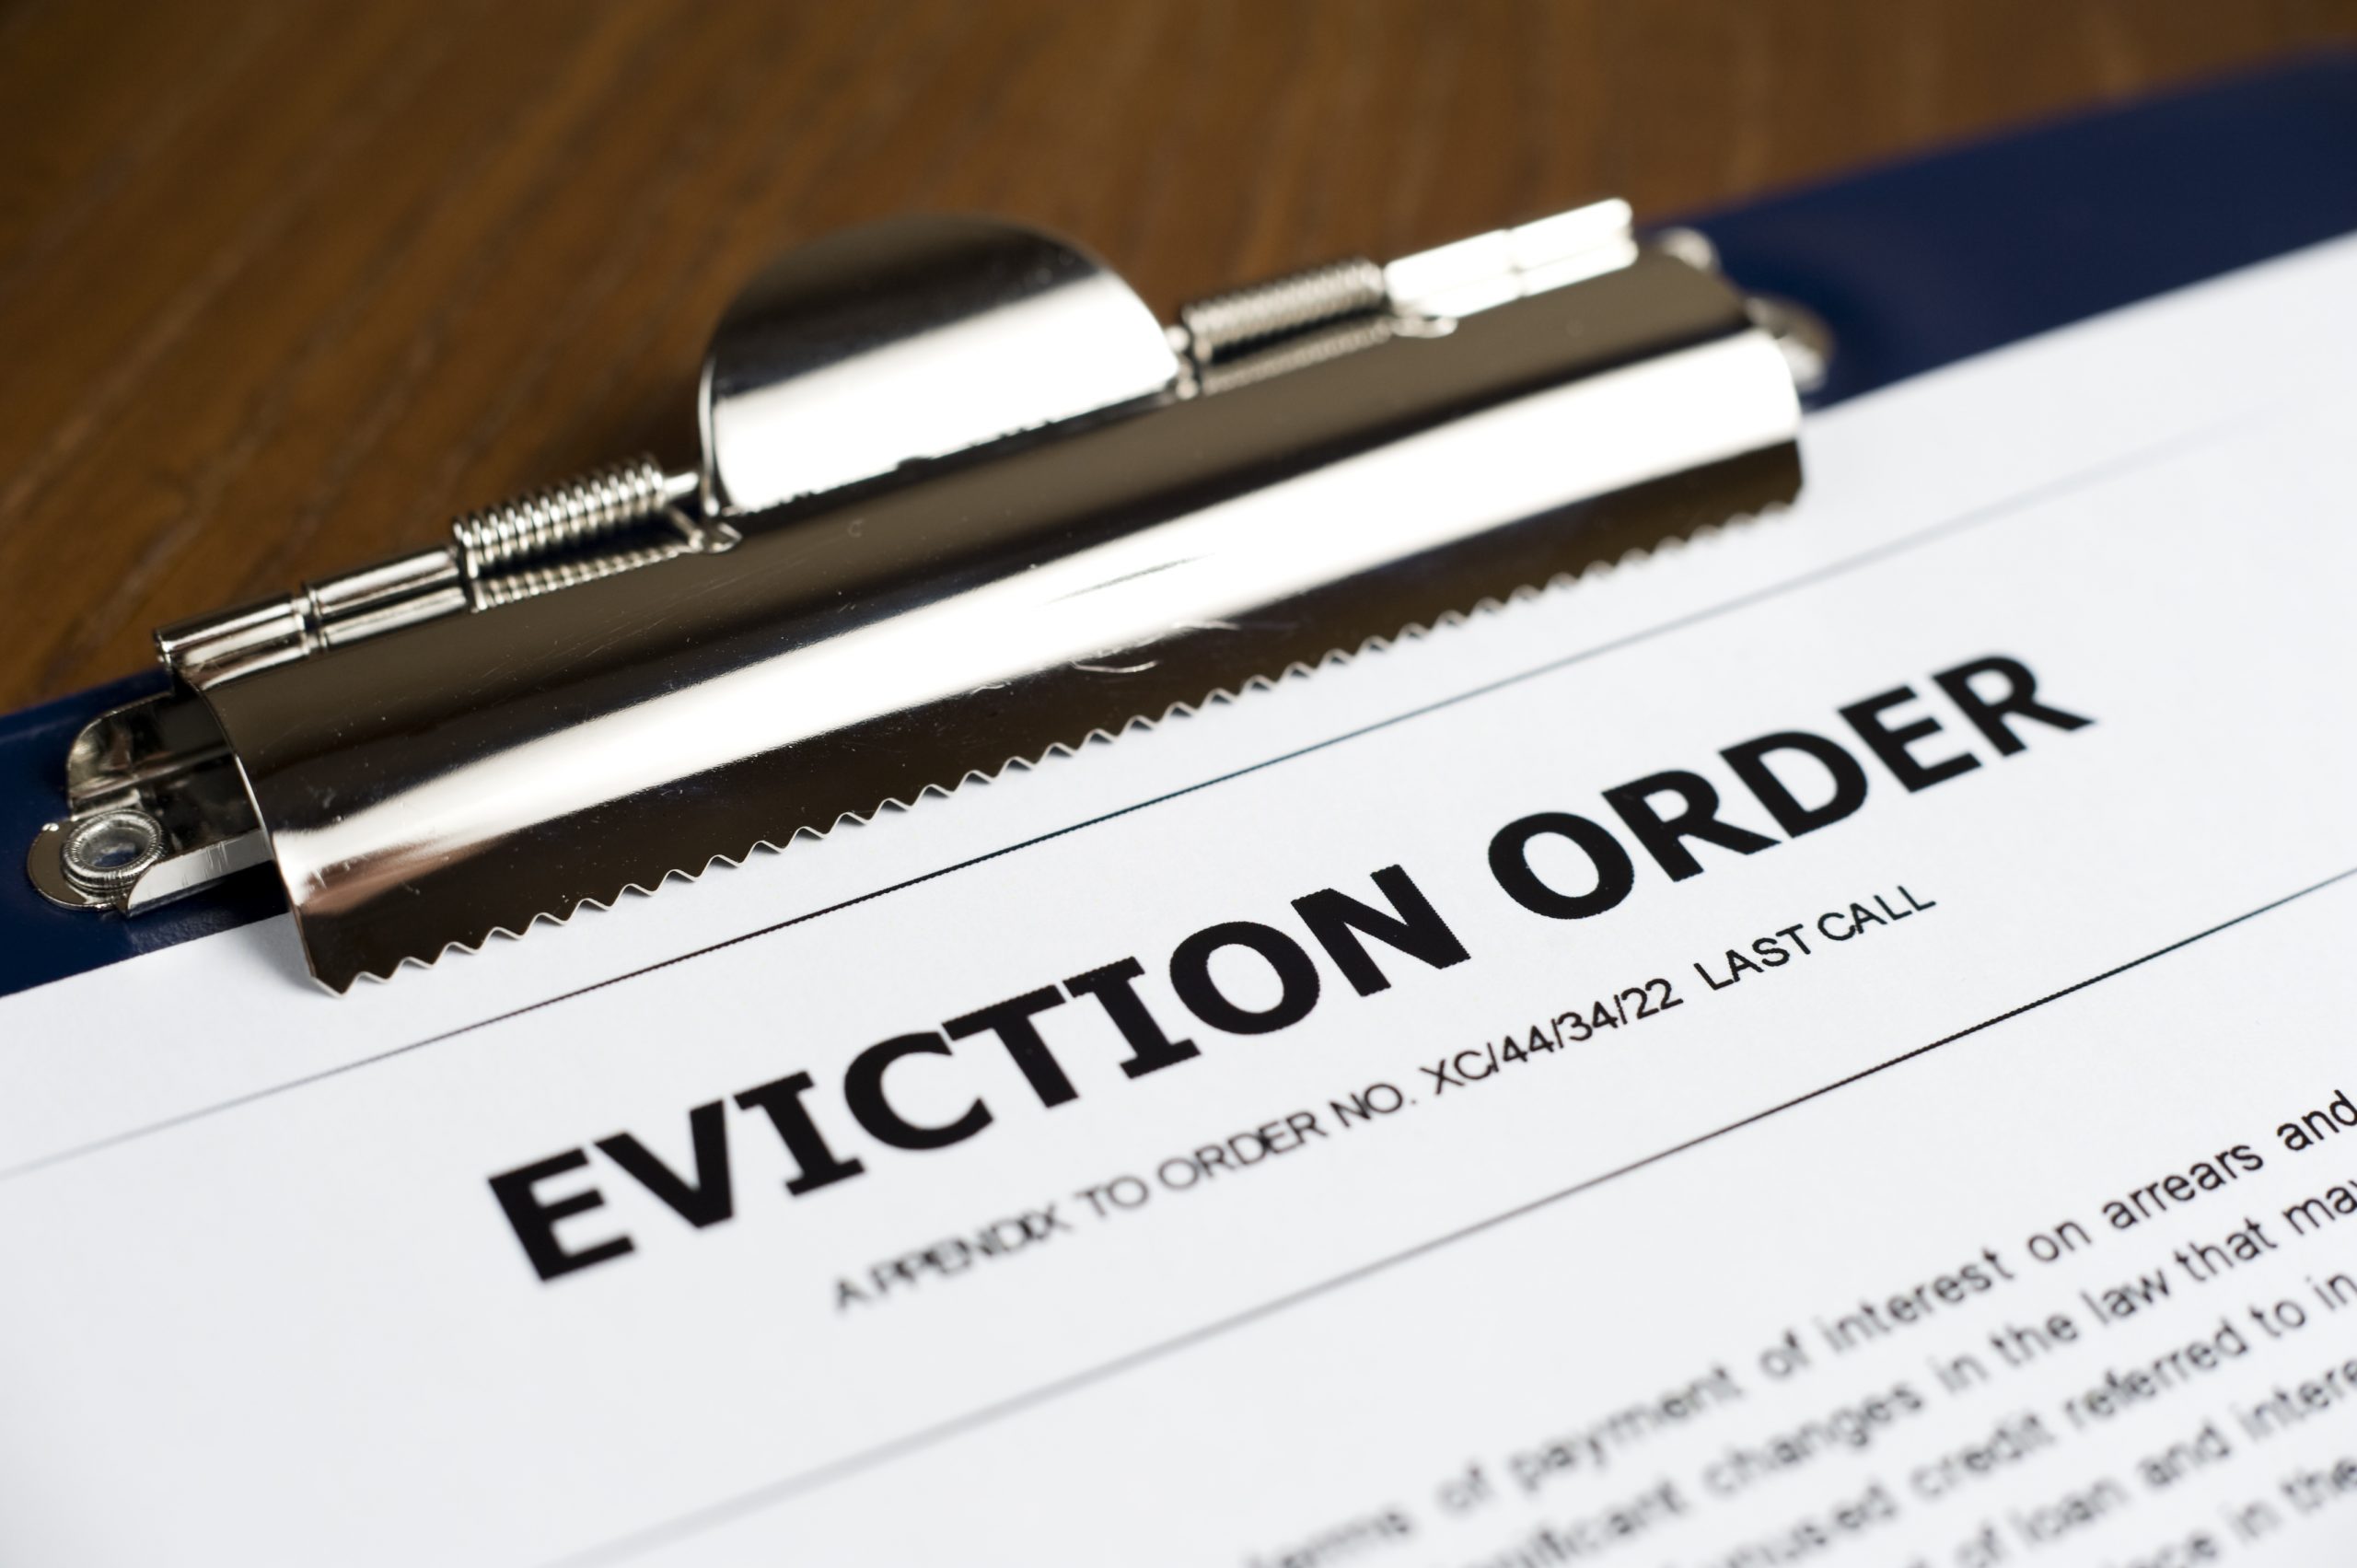 Até o fim de dezembro é esperado que entre 10 e 20 mil despejos e execuções de hipotecas cheguem aos tribunais (foto: pixabay)